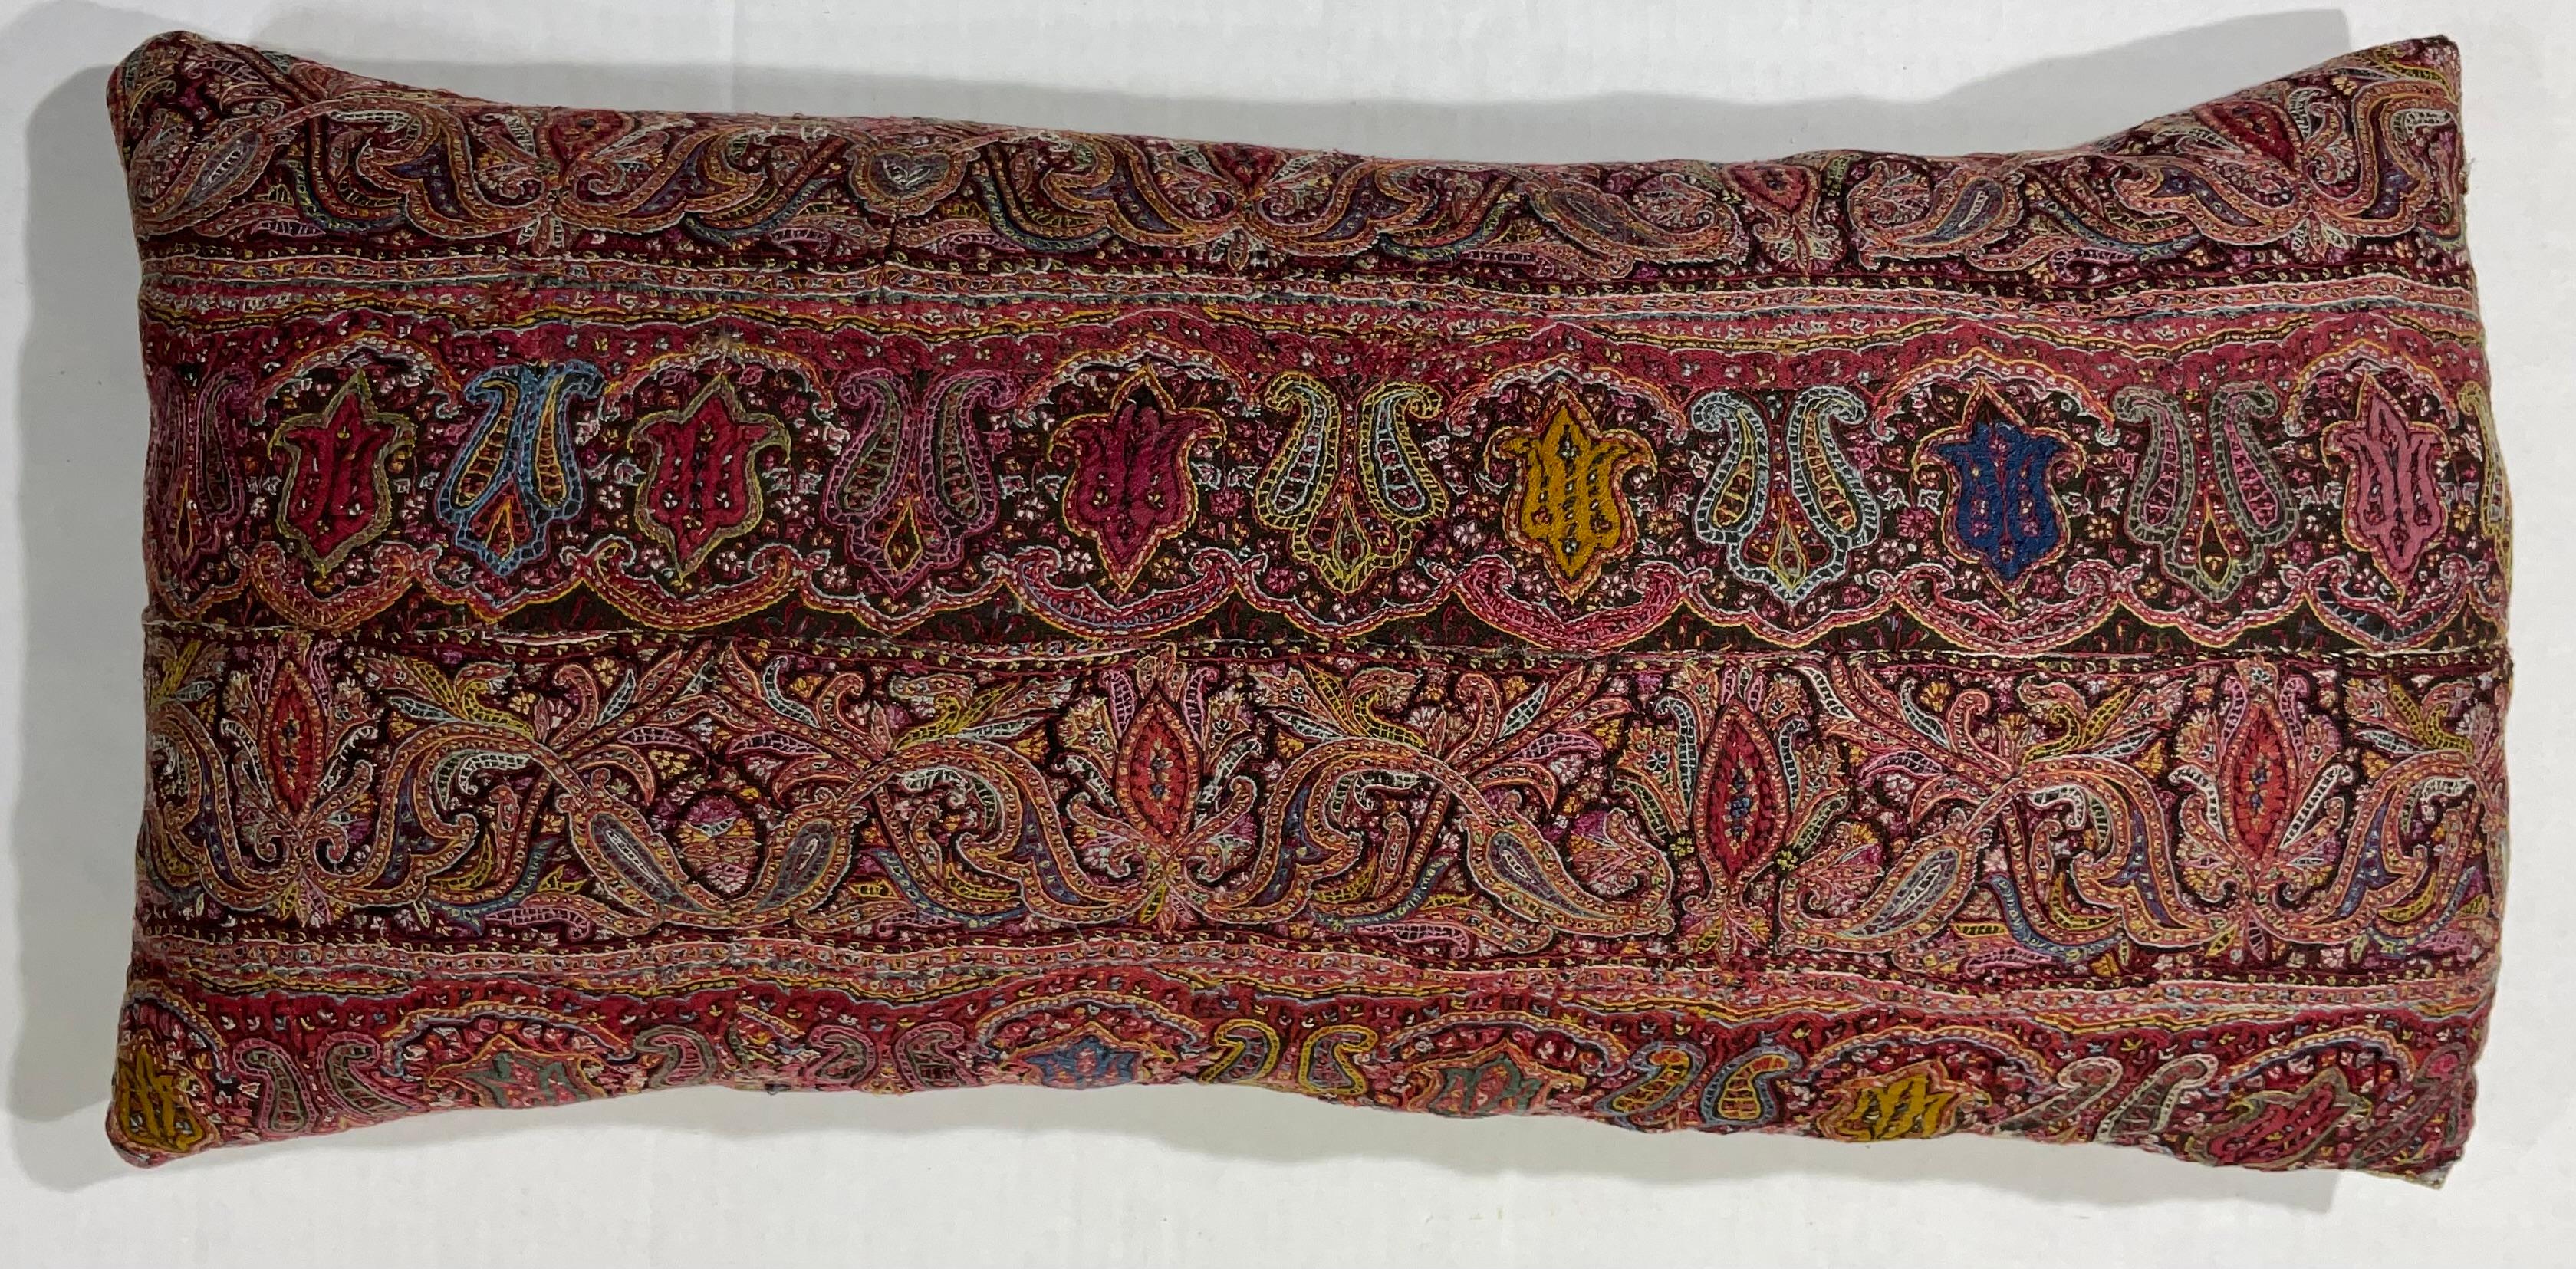 Wunderschönes, handgesticktes Kissen aus einem antiken persischen Stoff der Provinz Kermonsha.
Sehr detaillierte, lebhafte Blumenmotive.
Frische Einlage, feine Baumwollunterlage.